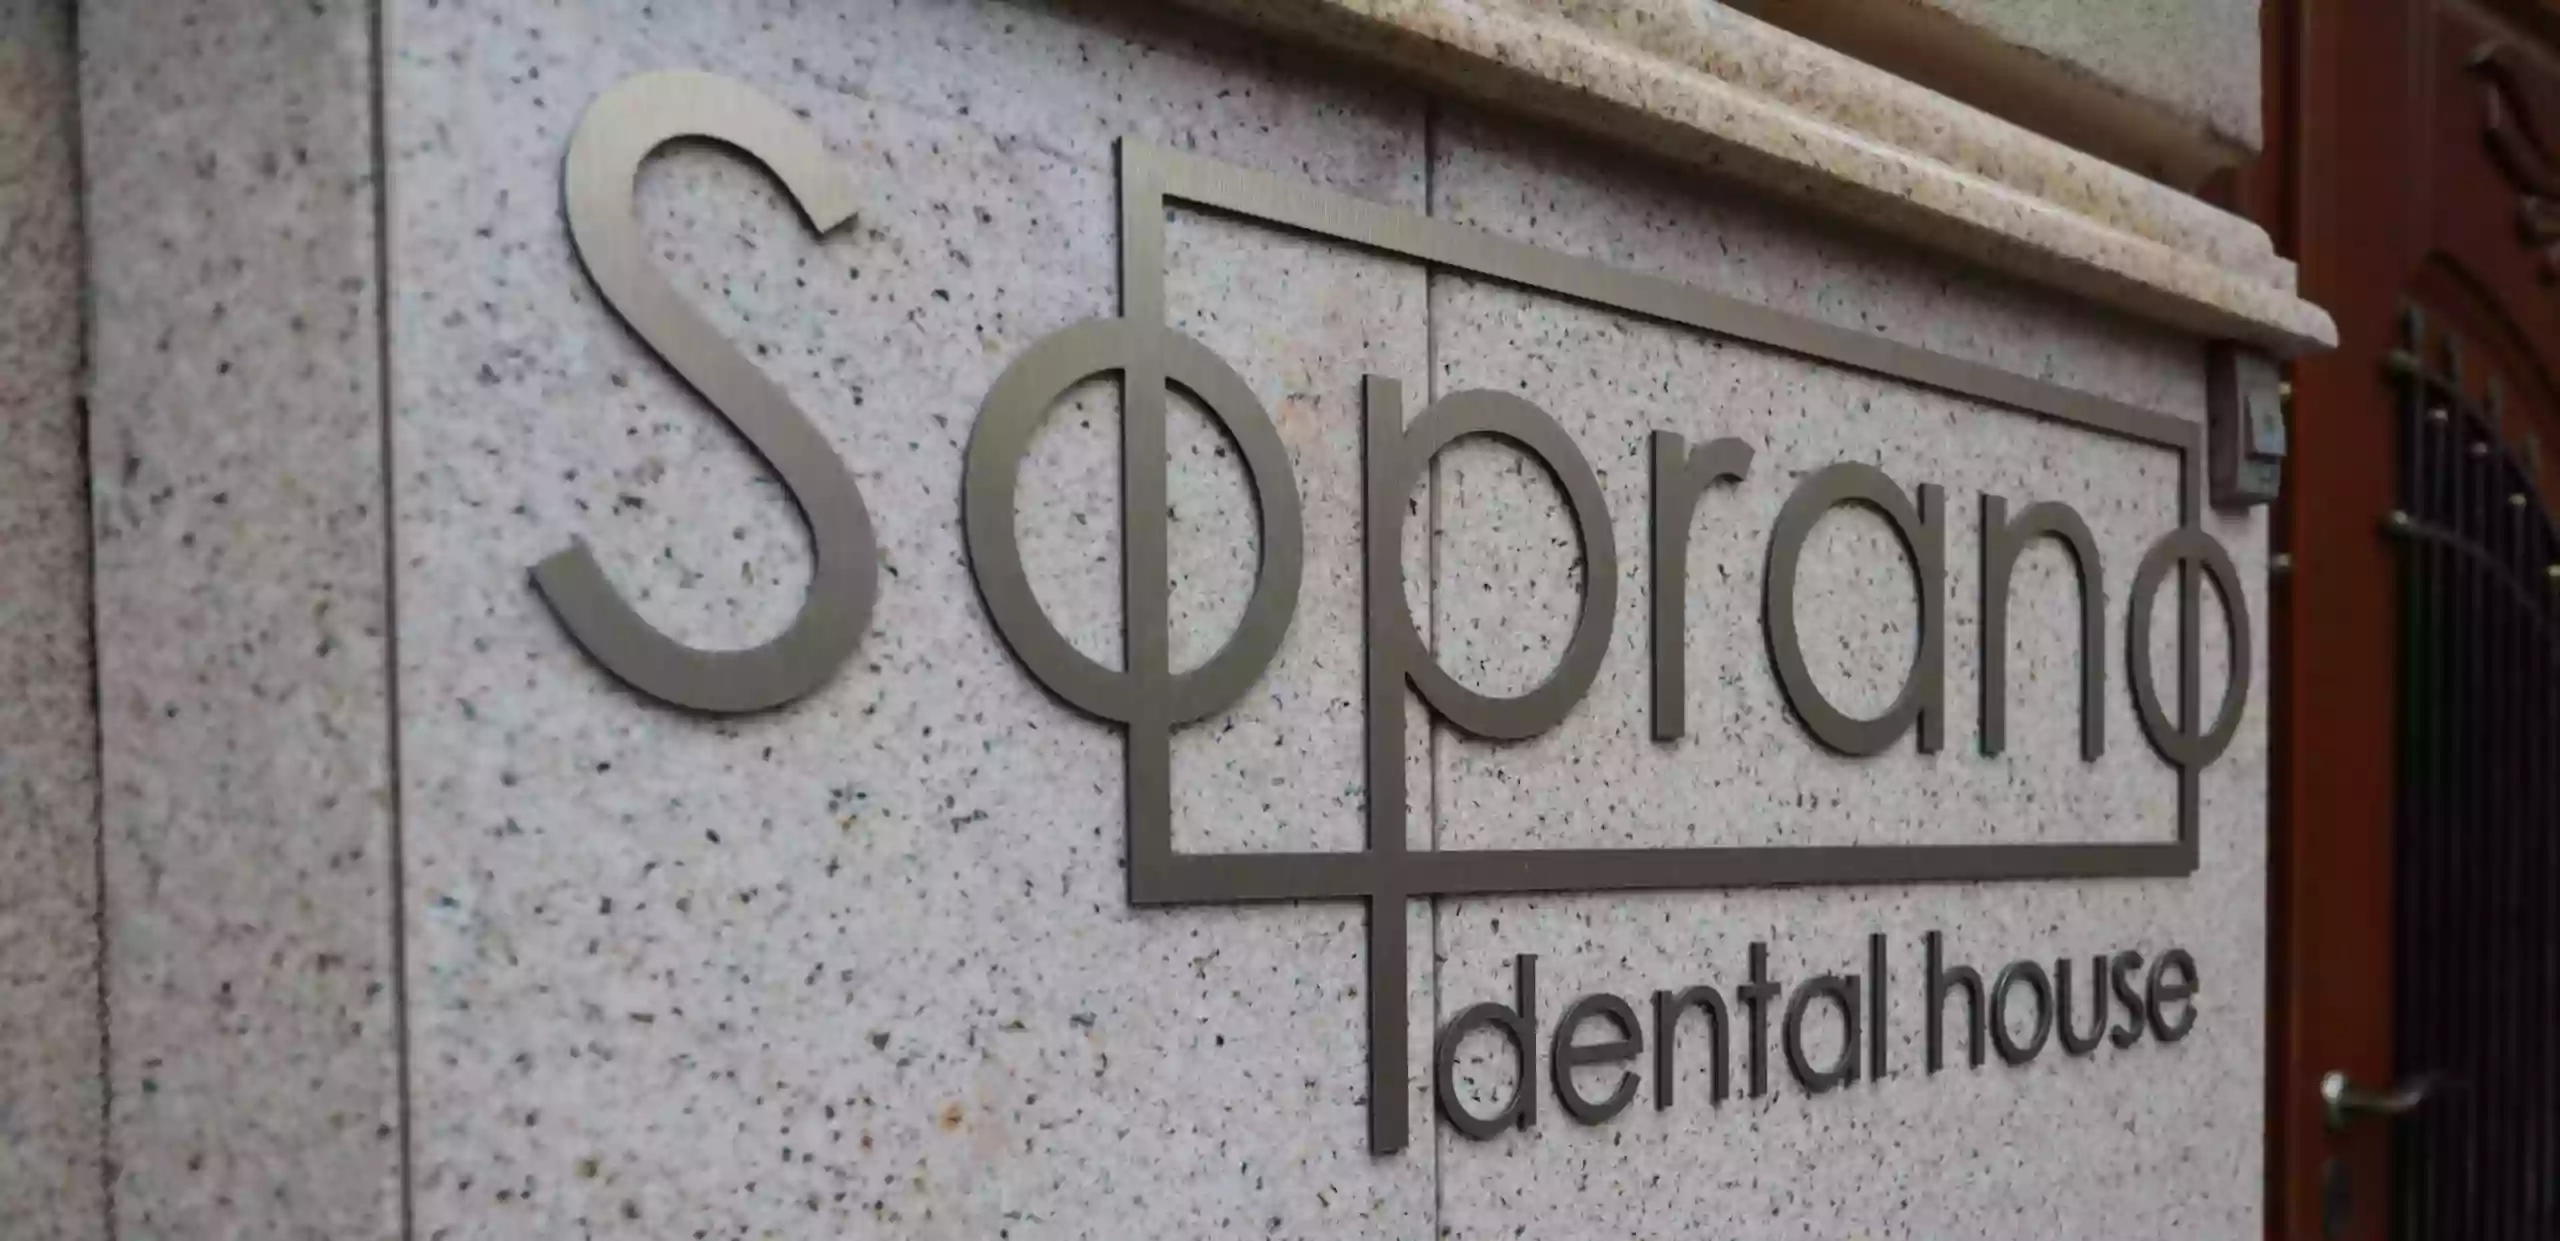 Стоматологічна клініка Сопрано / ️Soprano dental house